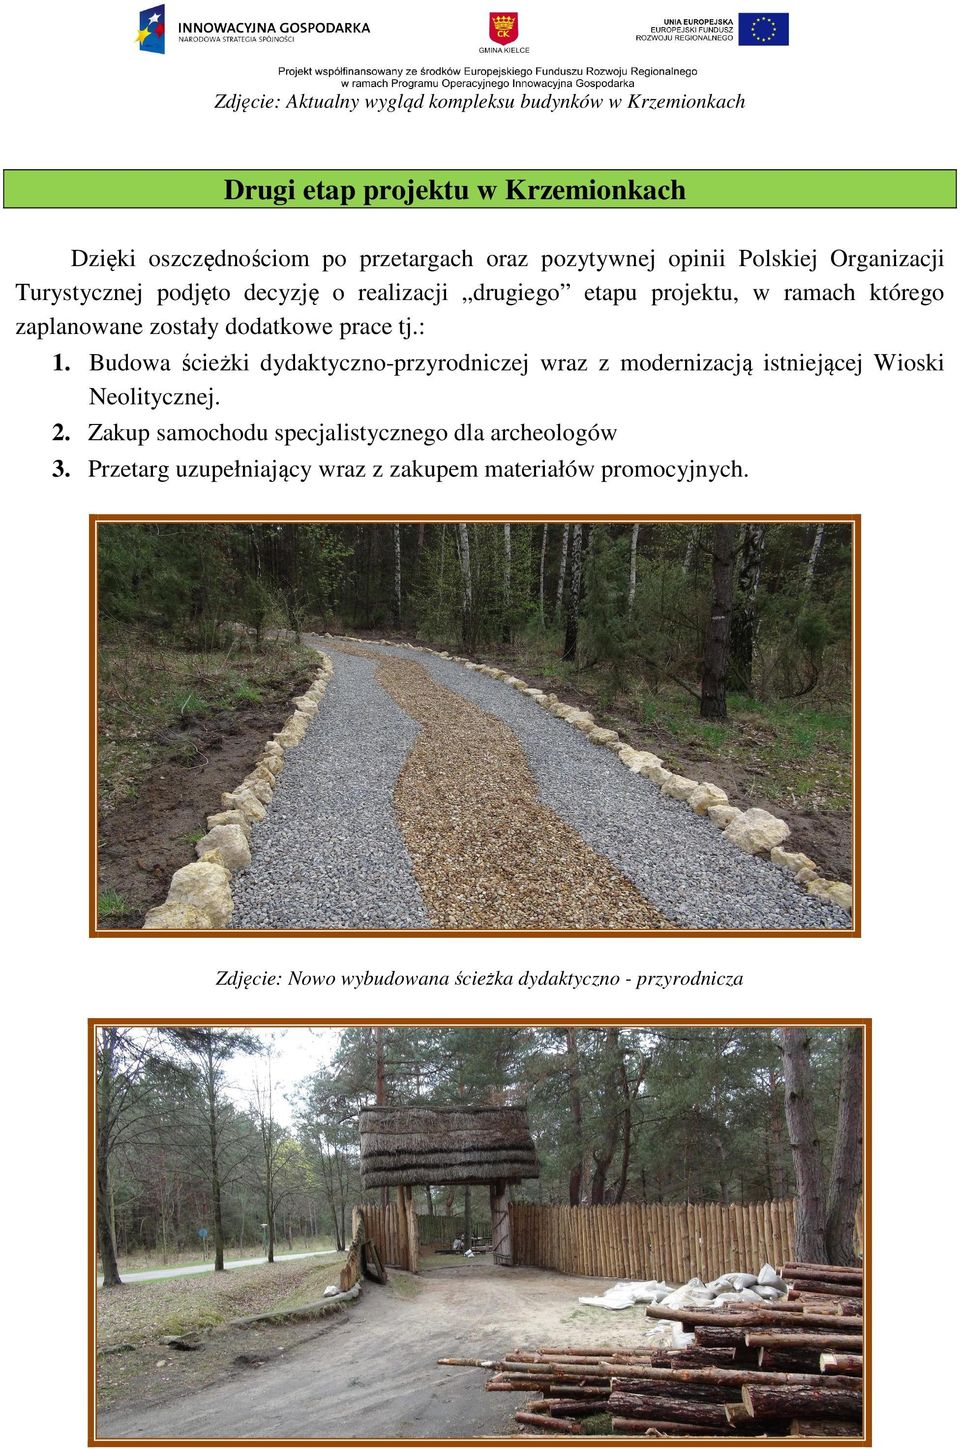 dodatkowe prace tj.: 1. Budowa ścieżki dydaktyczno-przyrodniczej wraz z modernizacją istniejącej Wioski Neolitycznej. 2.